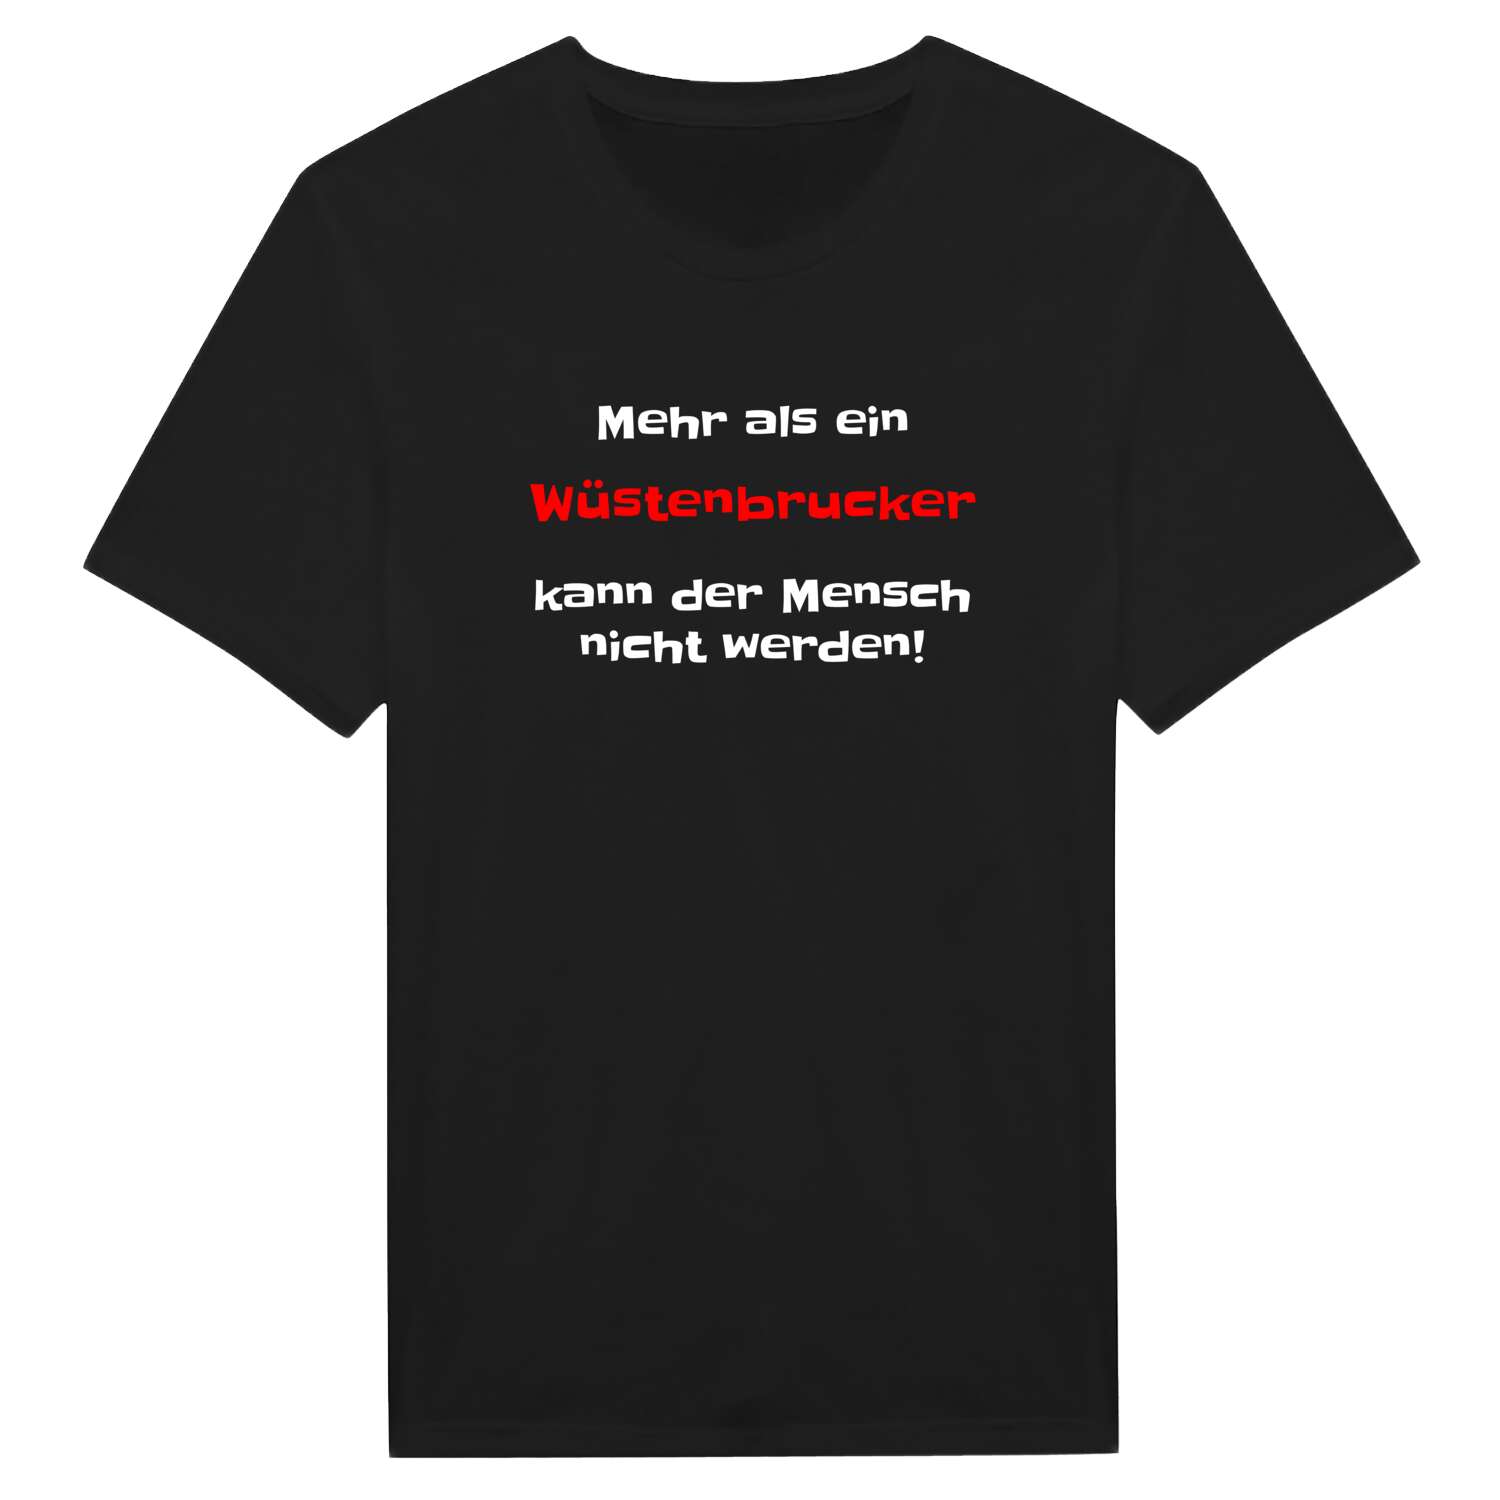 Wüstenbruck T-Shirt »Mehr als ein«